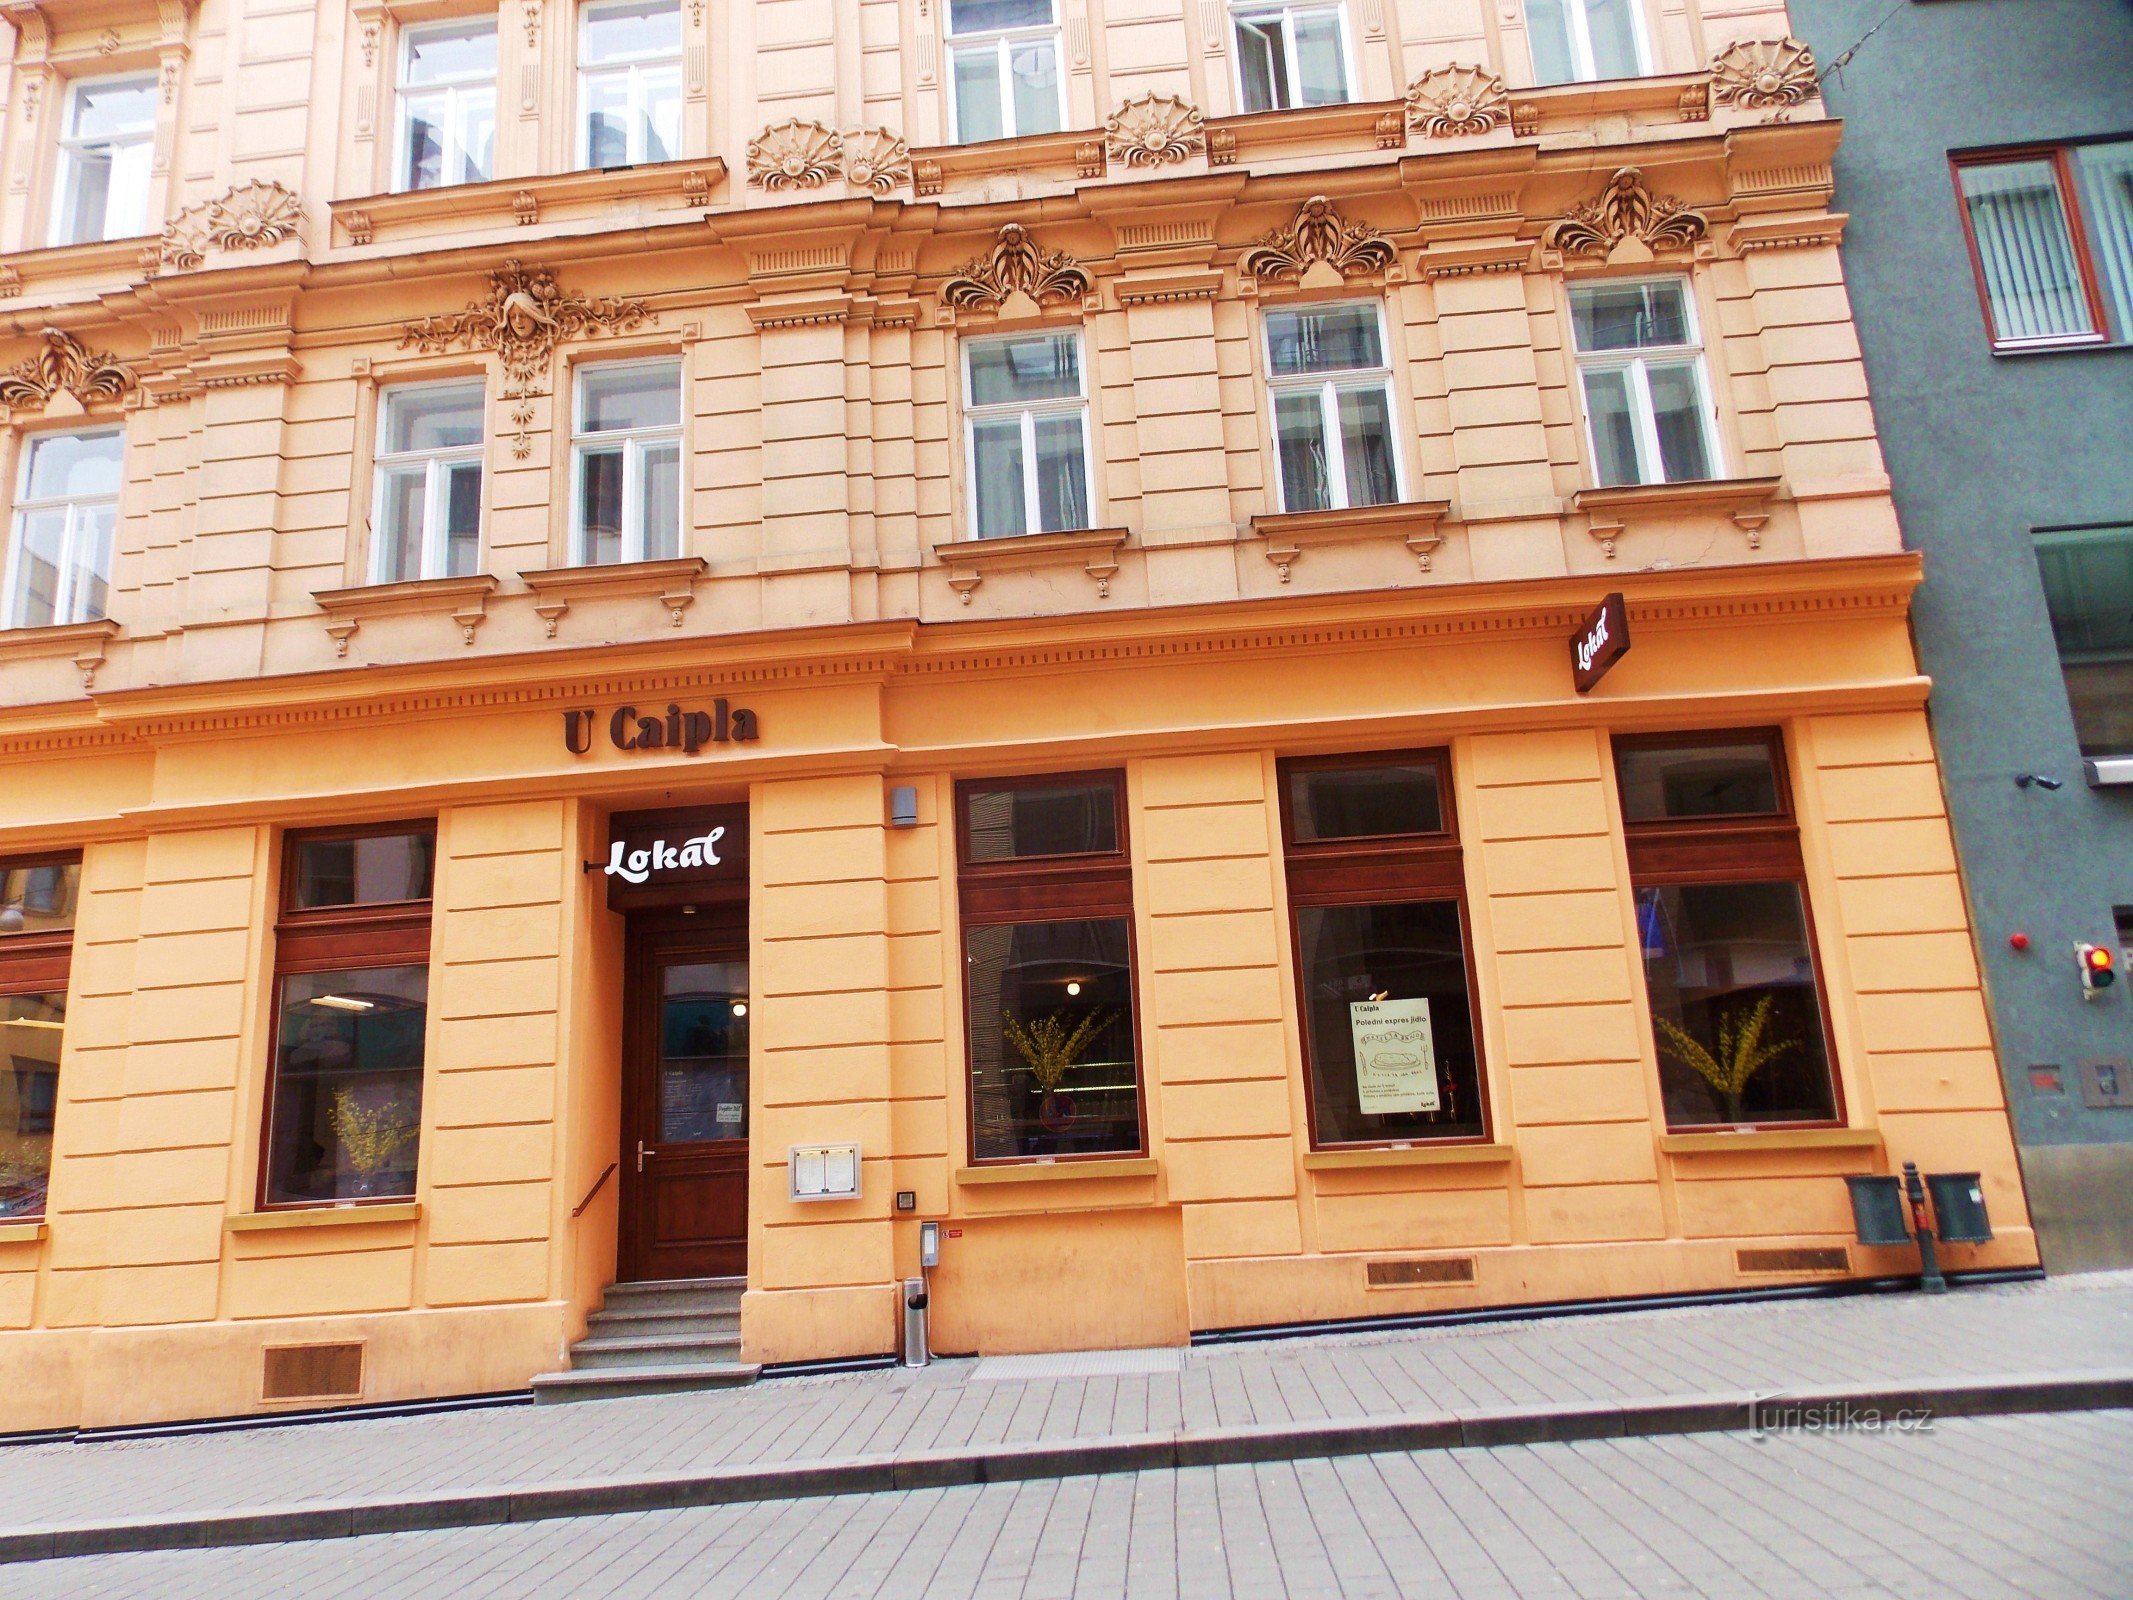 Nhà hàng - Địa phương gần Caipla ở trung tâm Brno